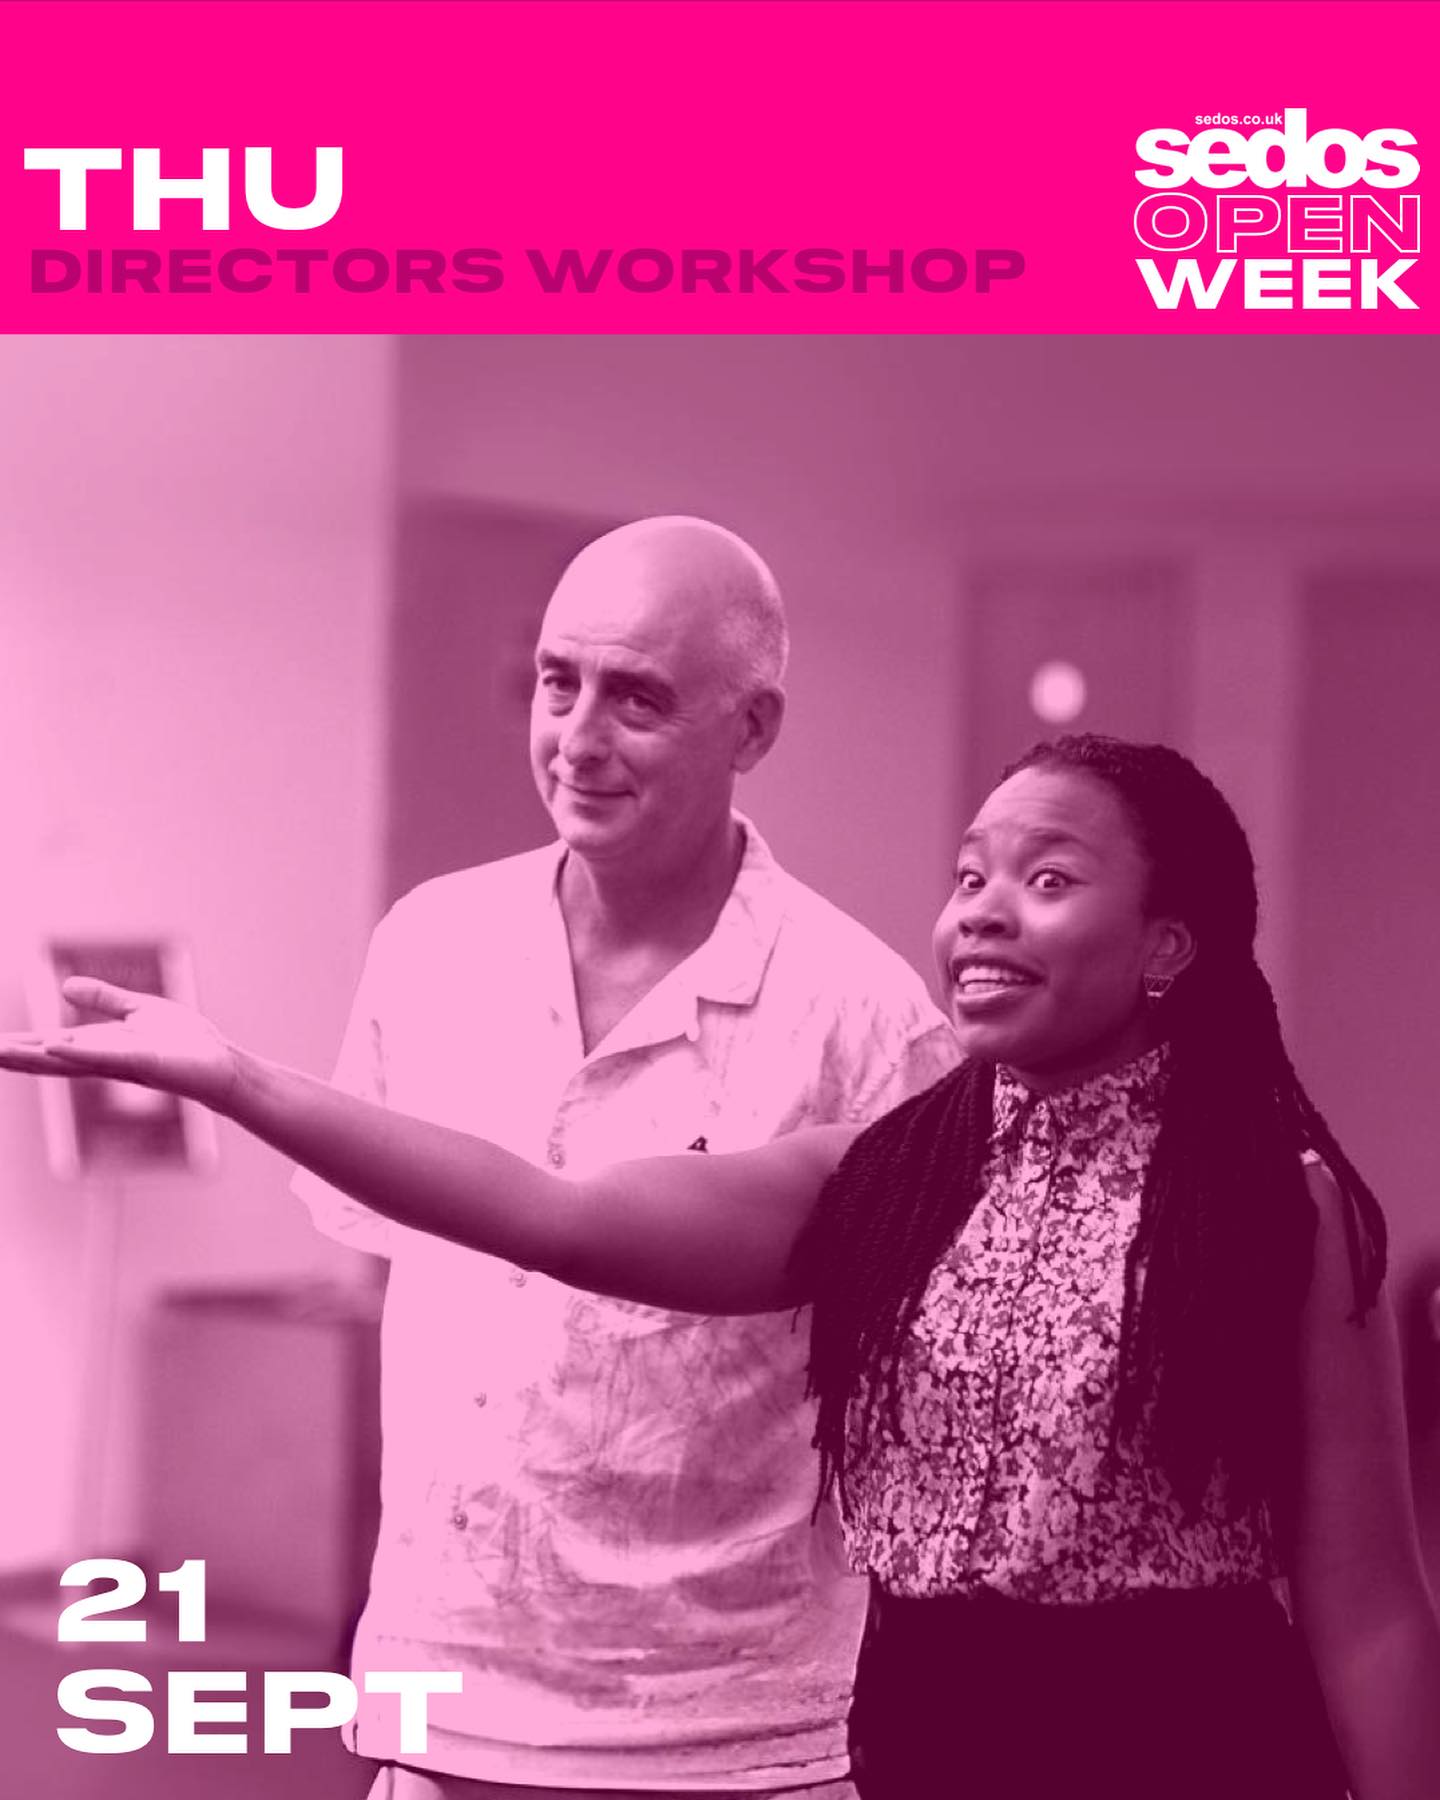 Open Week: Directors’ Workshop